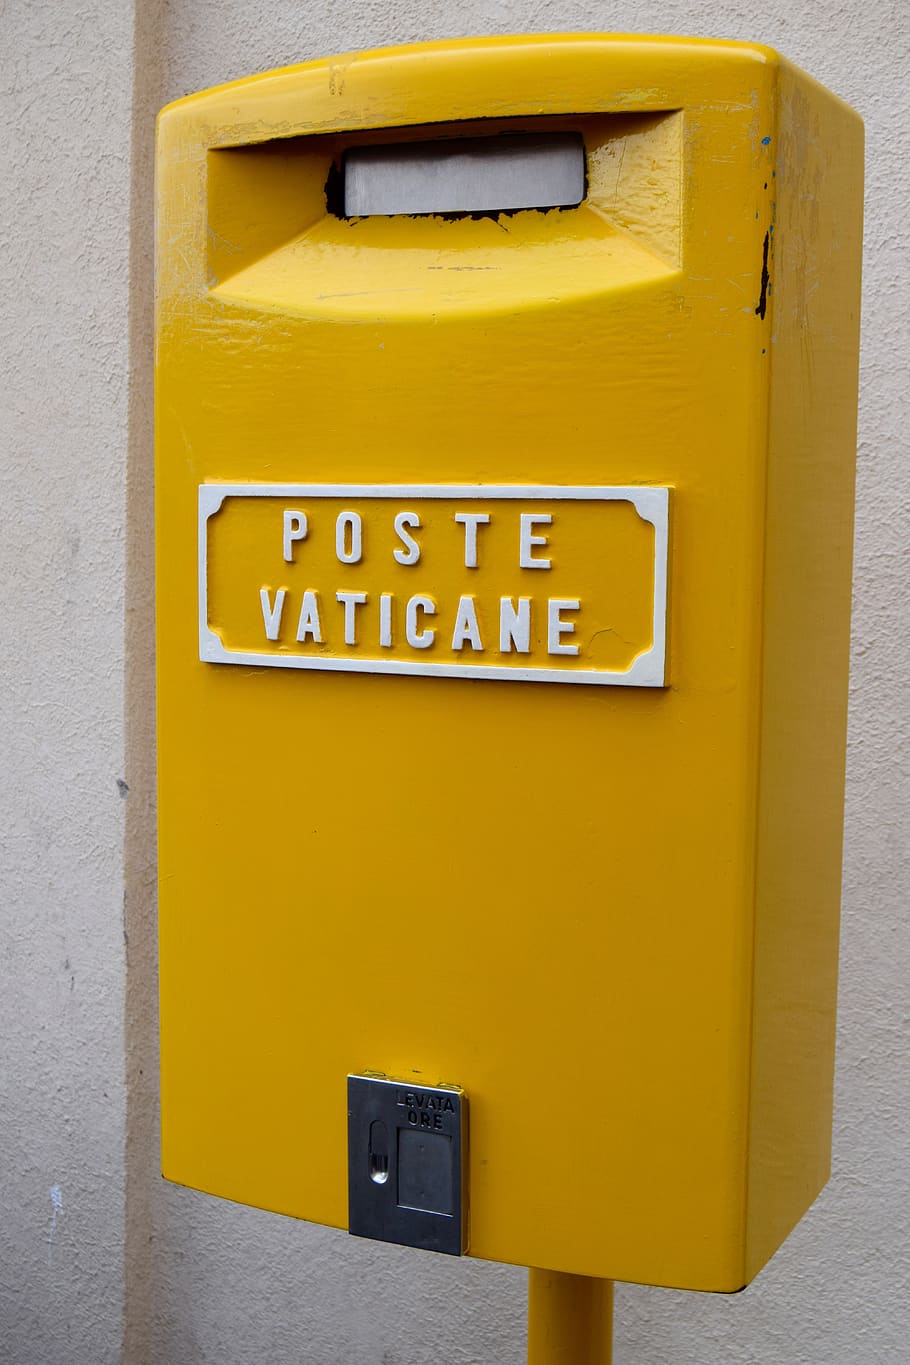 kuning, kotak pos, pos Vatikan, komunikasi, kotak surat, teks, surat, kotak surat umum, aksara barat, fitur dinding - bangunan